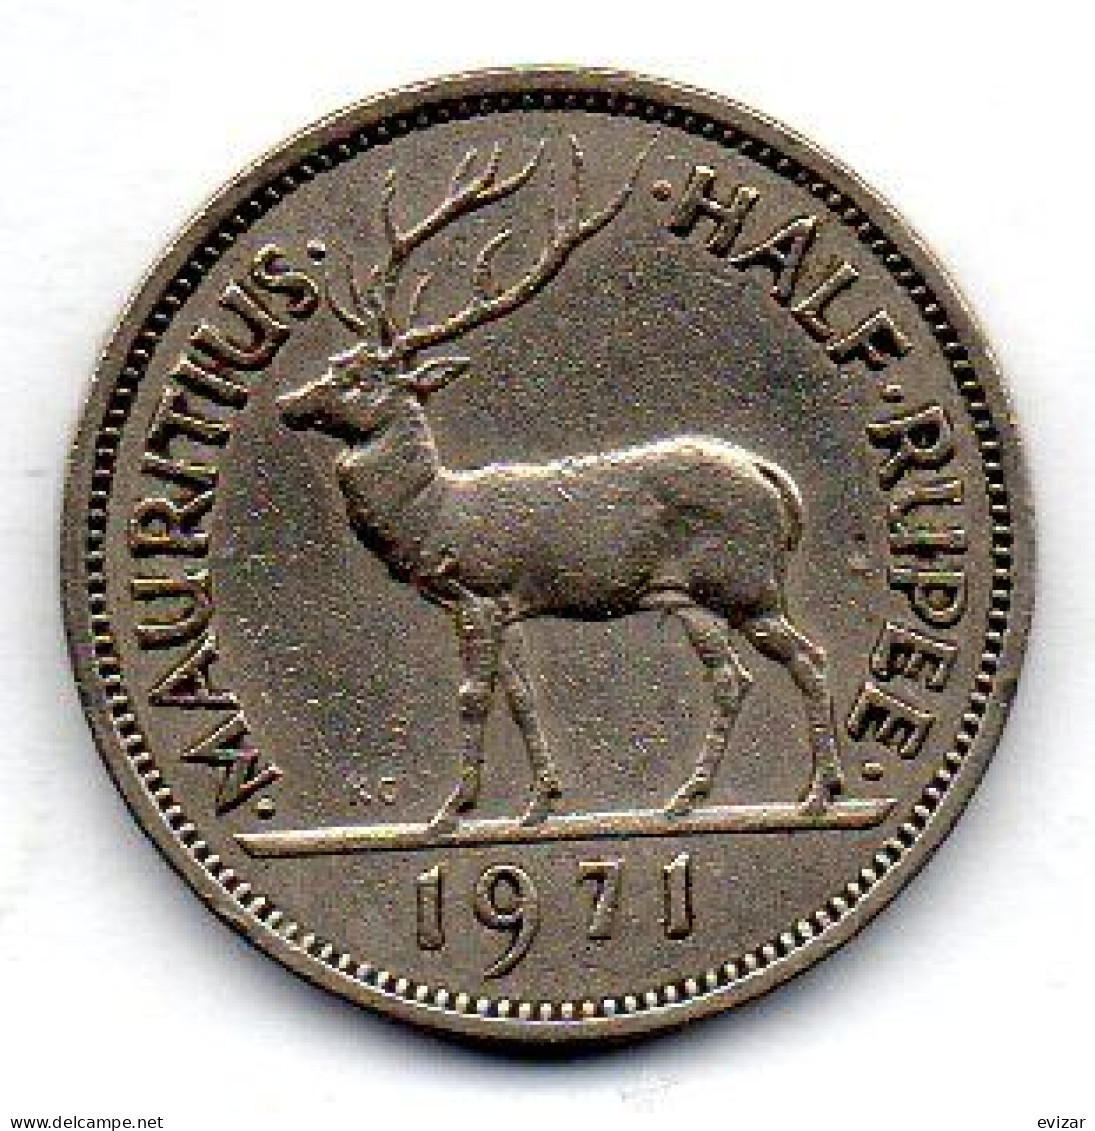 MAURITIUS, 1/2 Rupee, Copper-Nickel, Year 1971, KM # 37.1 - Maurice